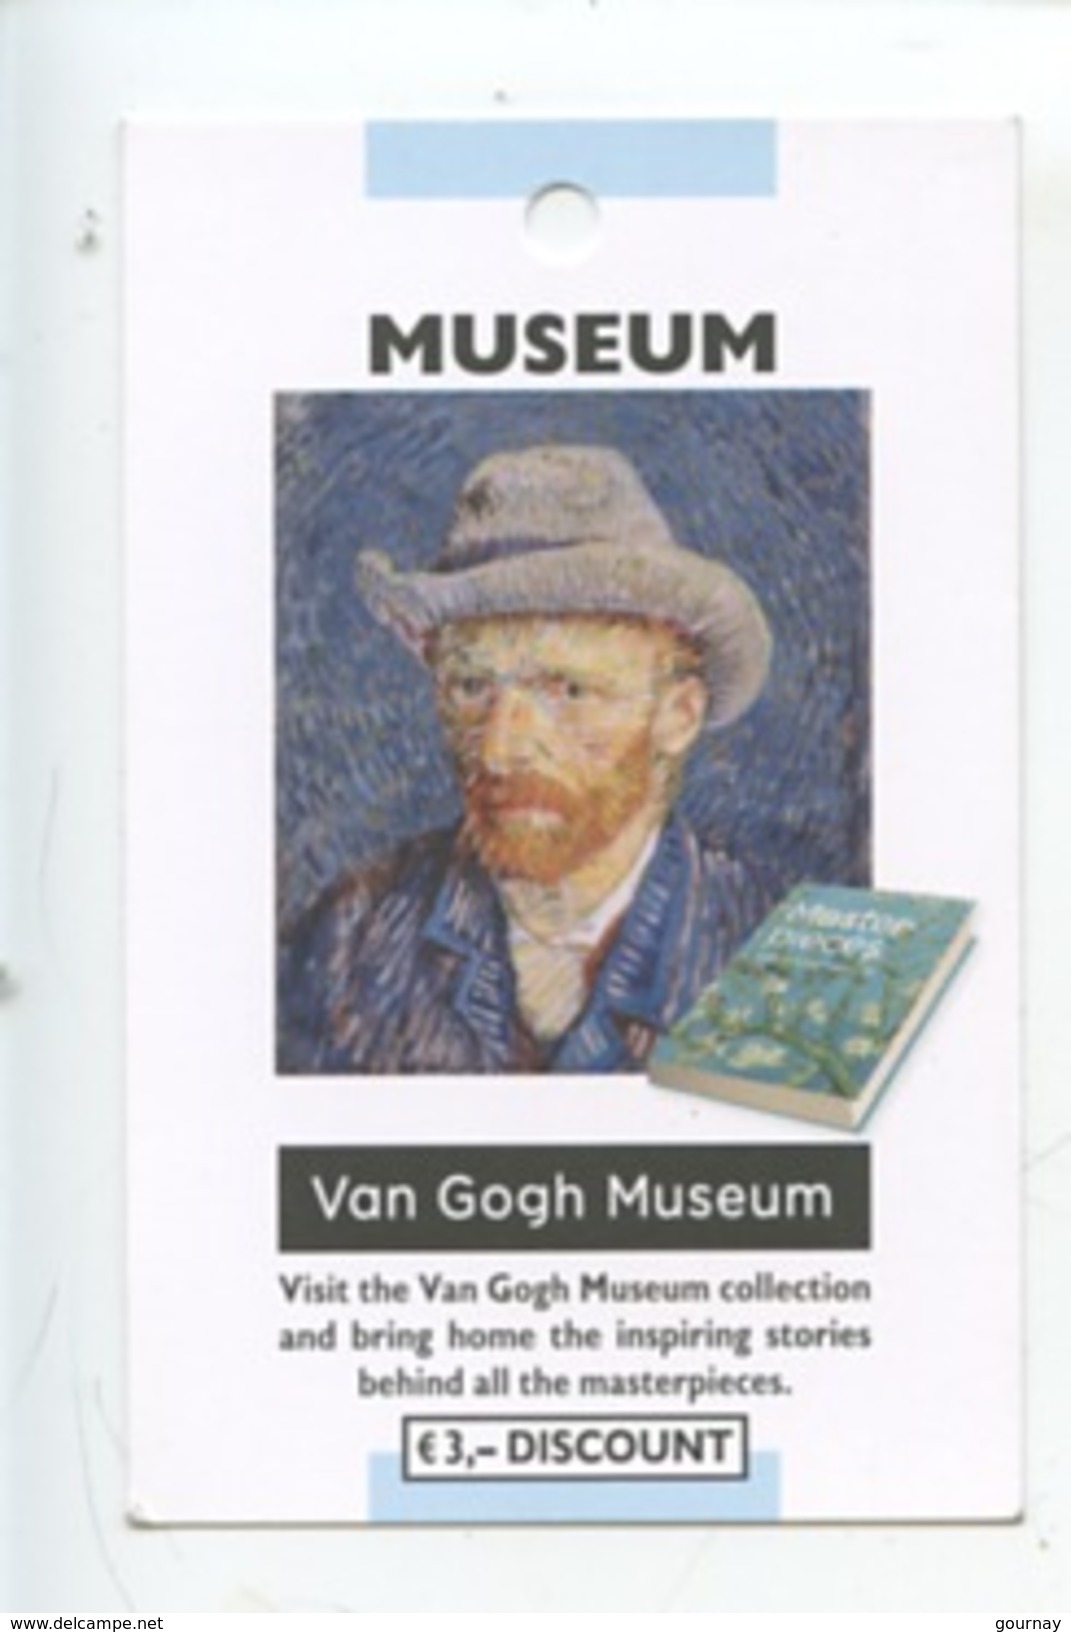 Van Gogh Museum Amsterdam - Tickets - Vouchers